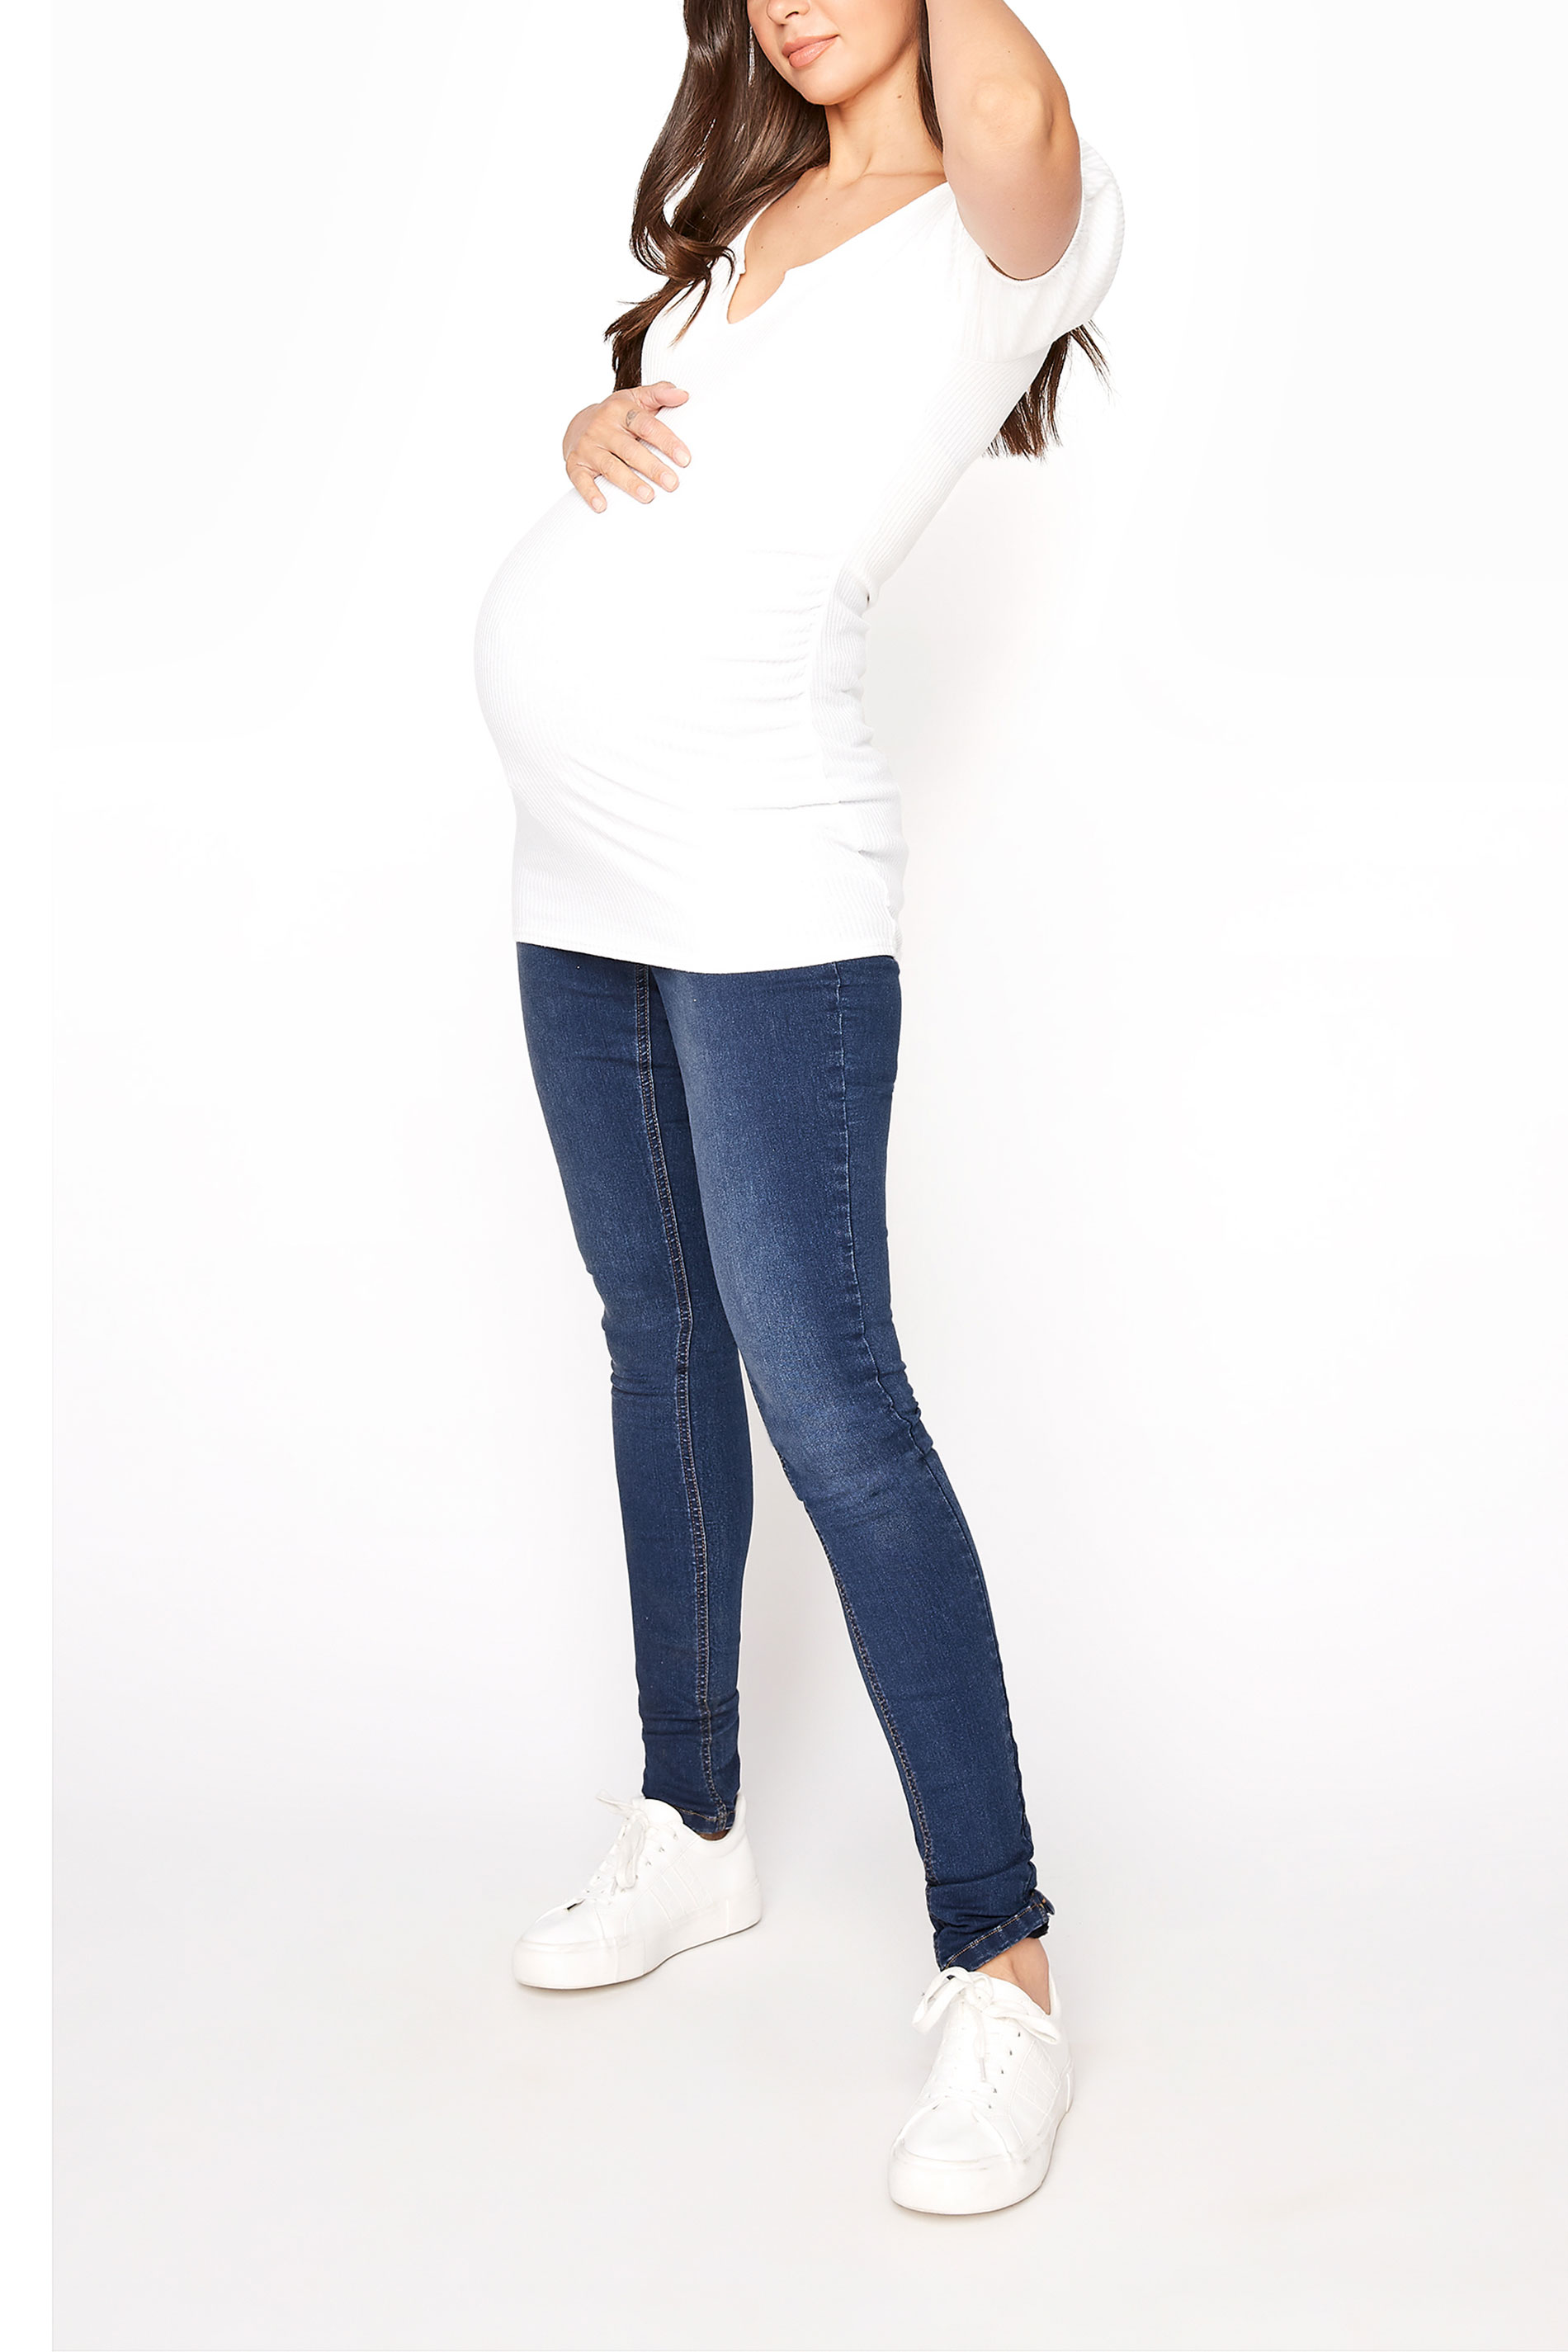 LTS Tall Maternity Blue Skinny Jeans_A.jpg